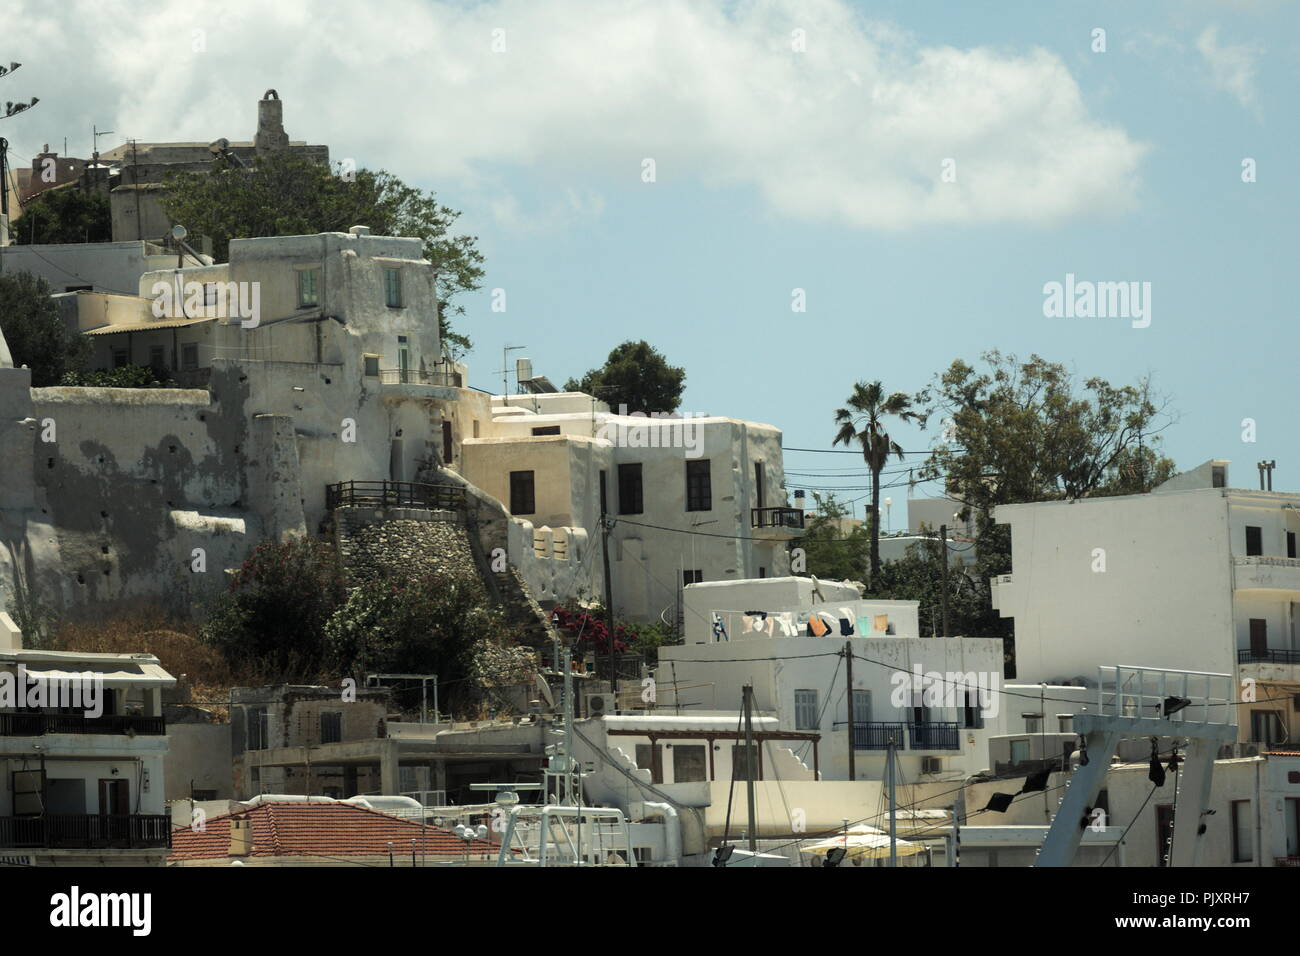 Griechenland, Naxos Stadt. Ein Blick auf die befestigte alte venezianische Kastro die noch dominiert die Stadt Naxos Stockfoto